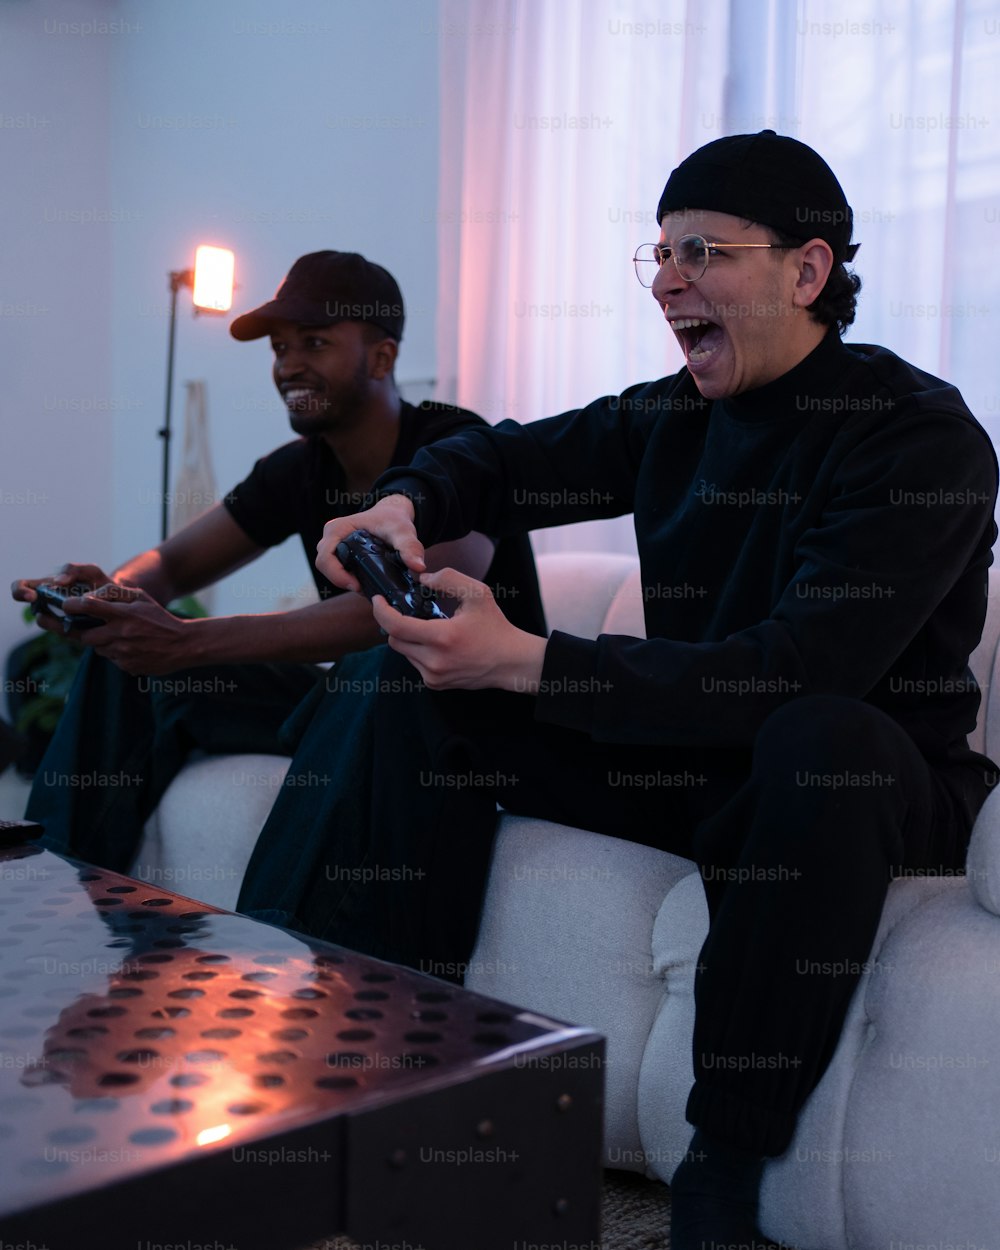 Deux personnes assises sur un canapé jouant à un jeu vidéo